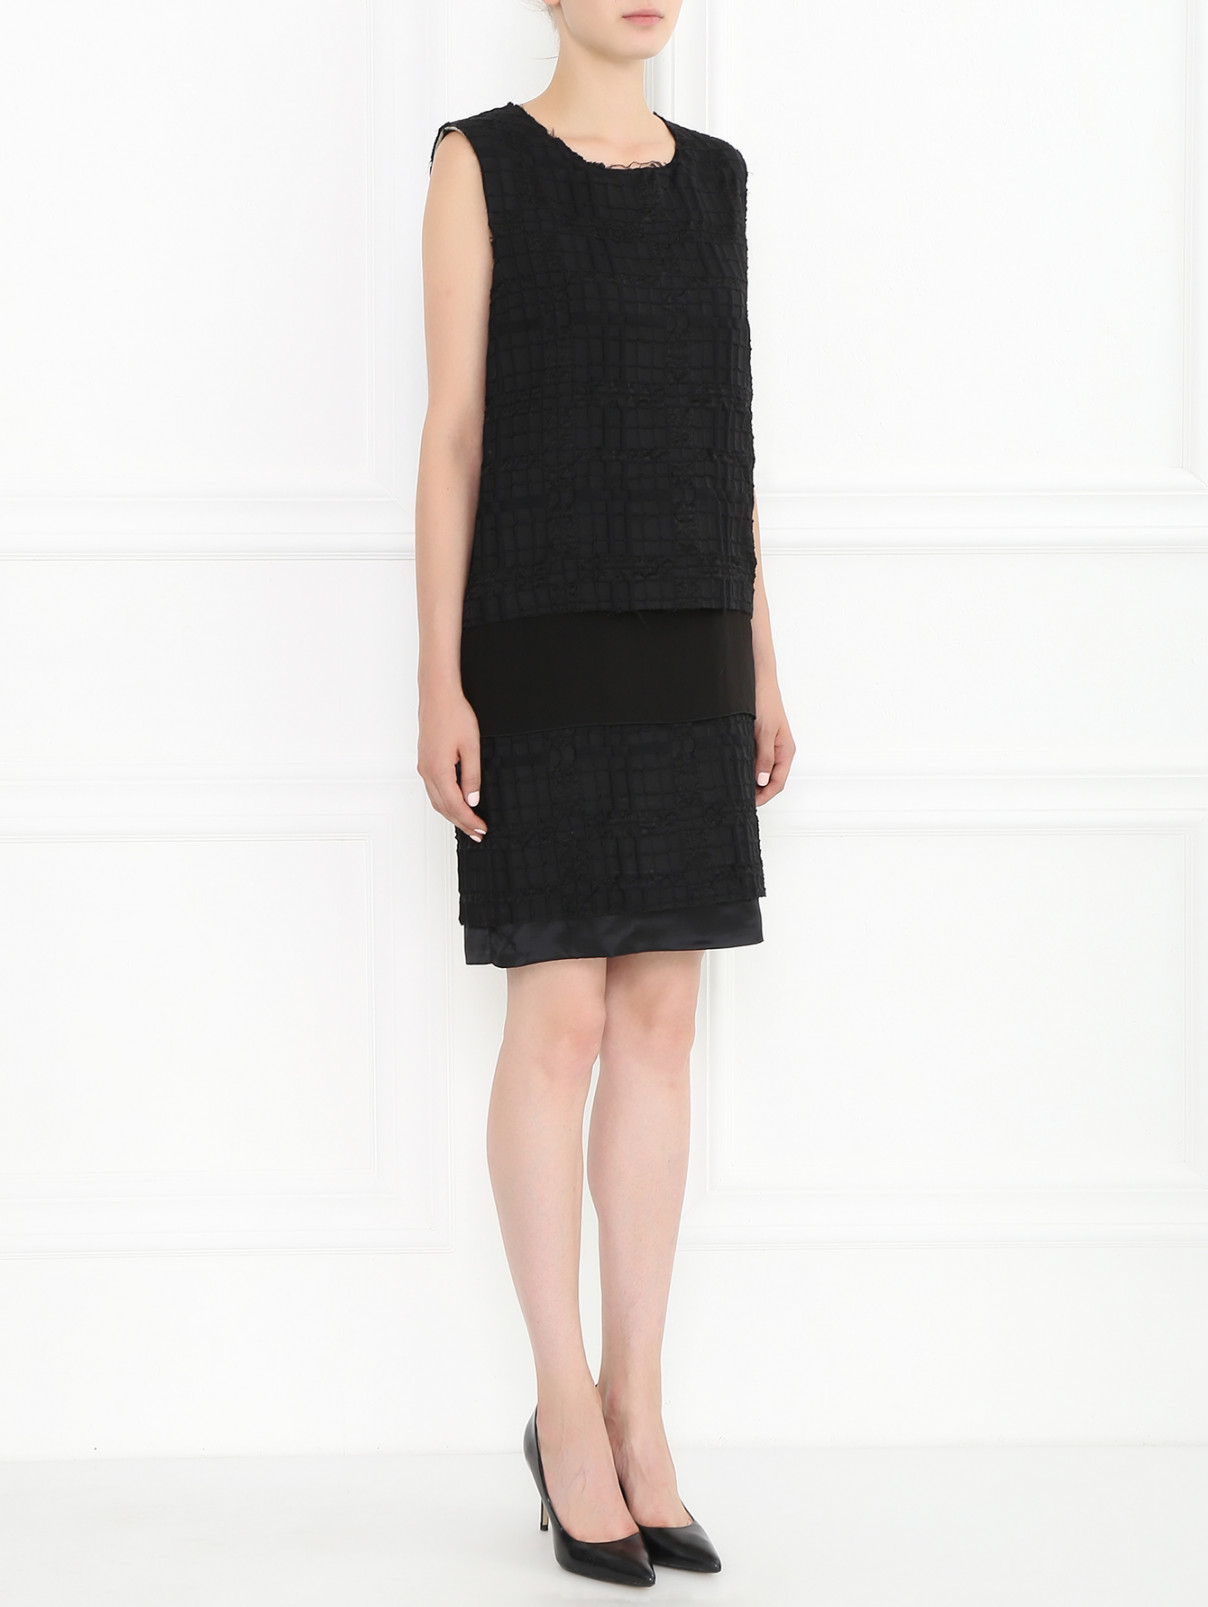 Платье-мини из шерсти и хлопка Maison Margiela  –  Модель Общий вид  – Цвет:  Черный